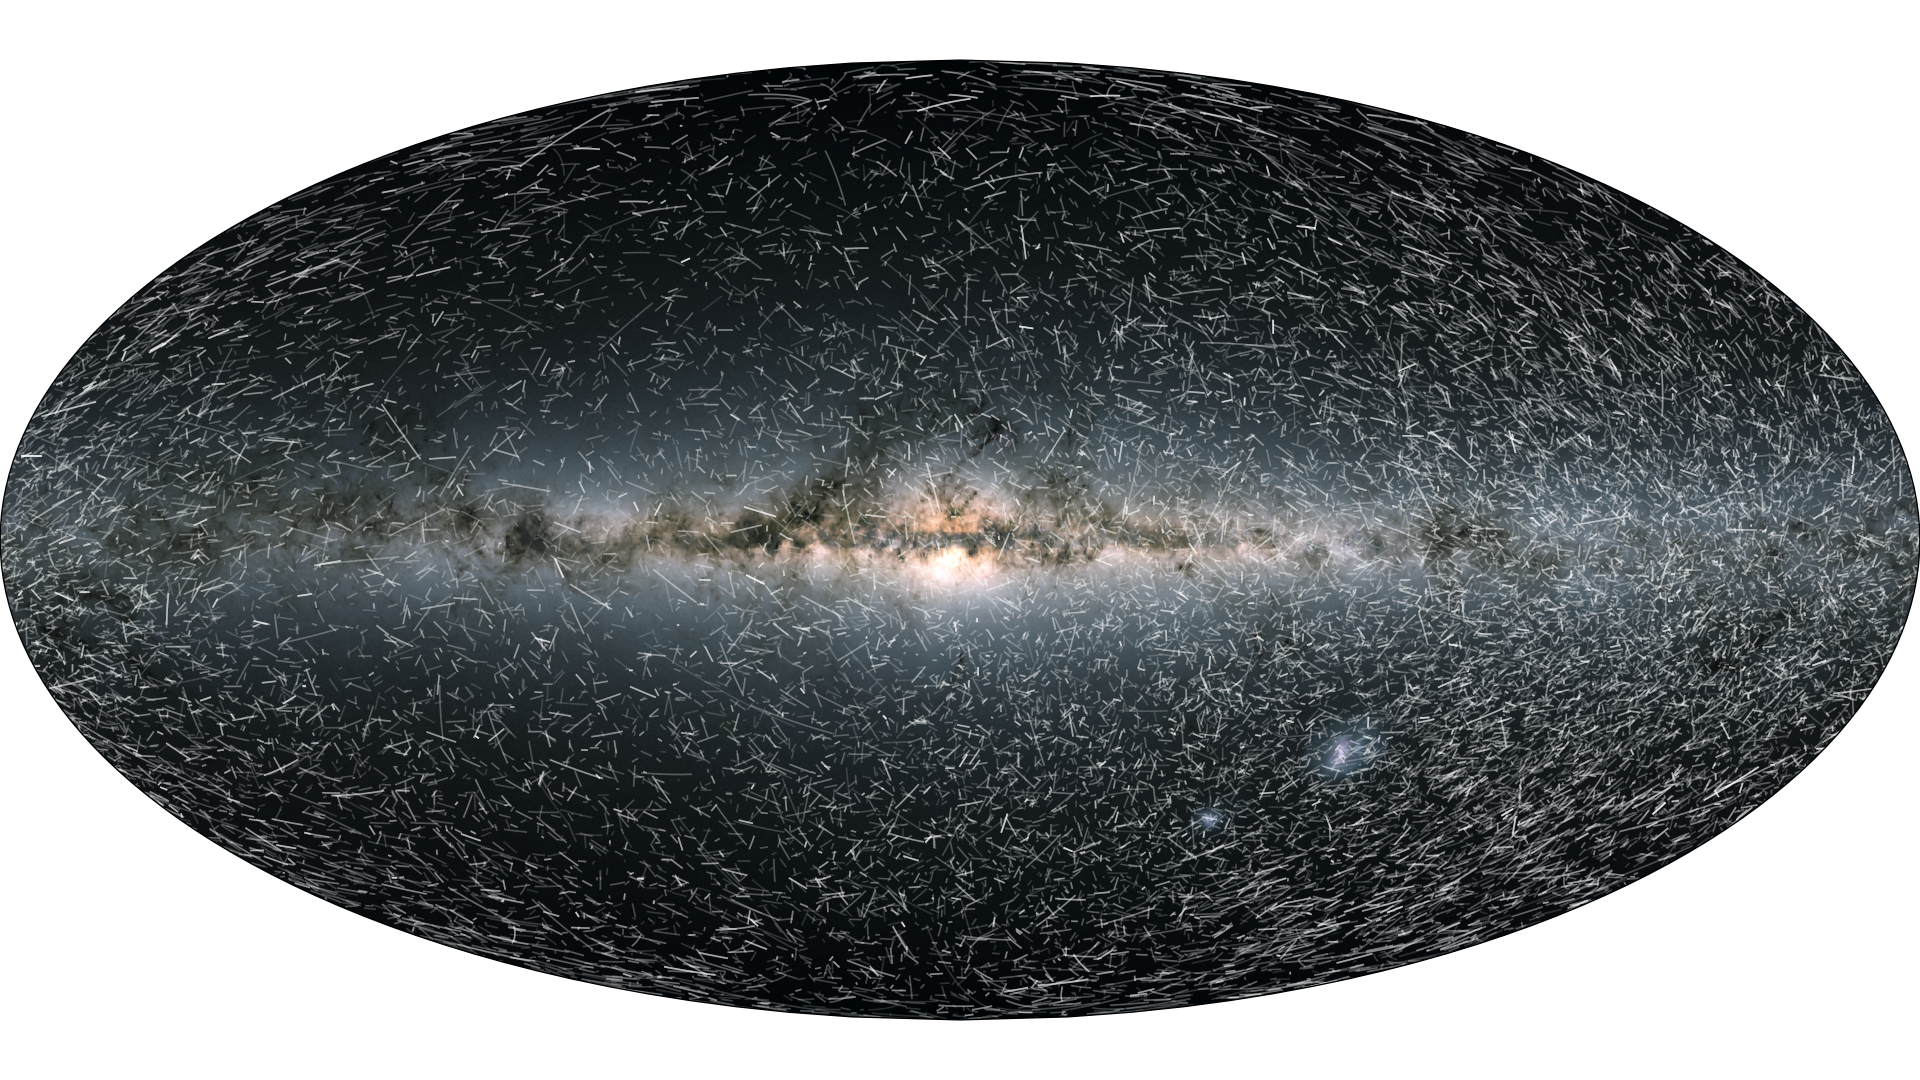 Gaia EDR3 - Star Trails - Gaia - Cosmos